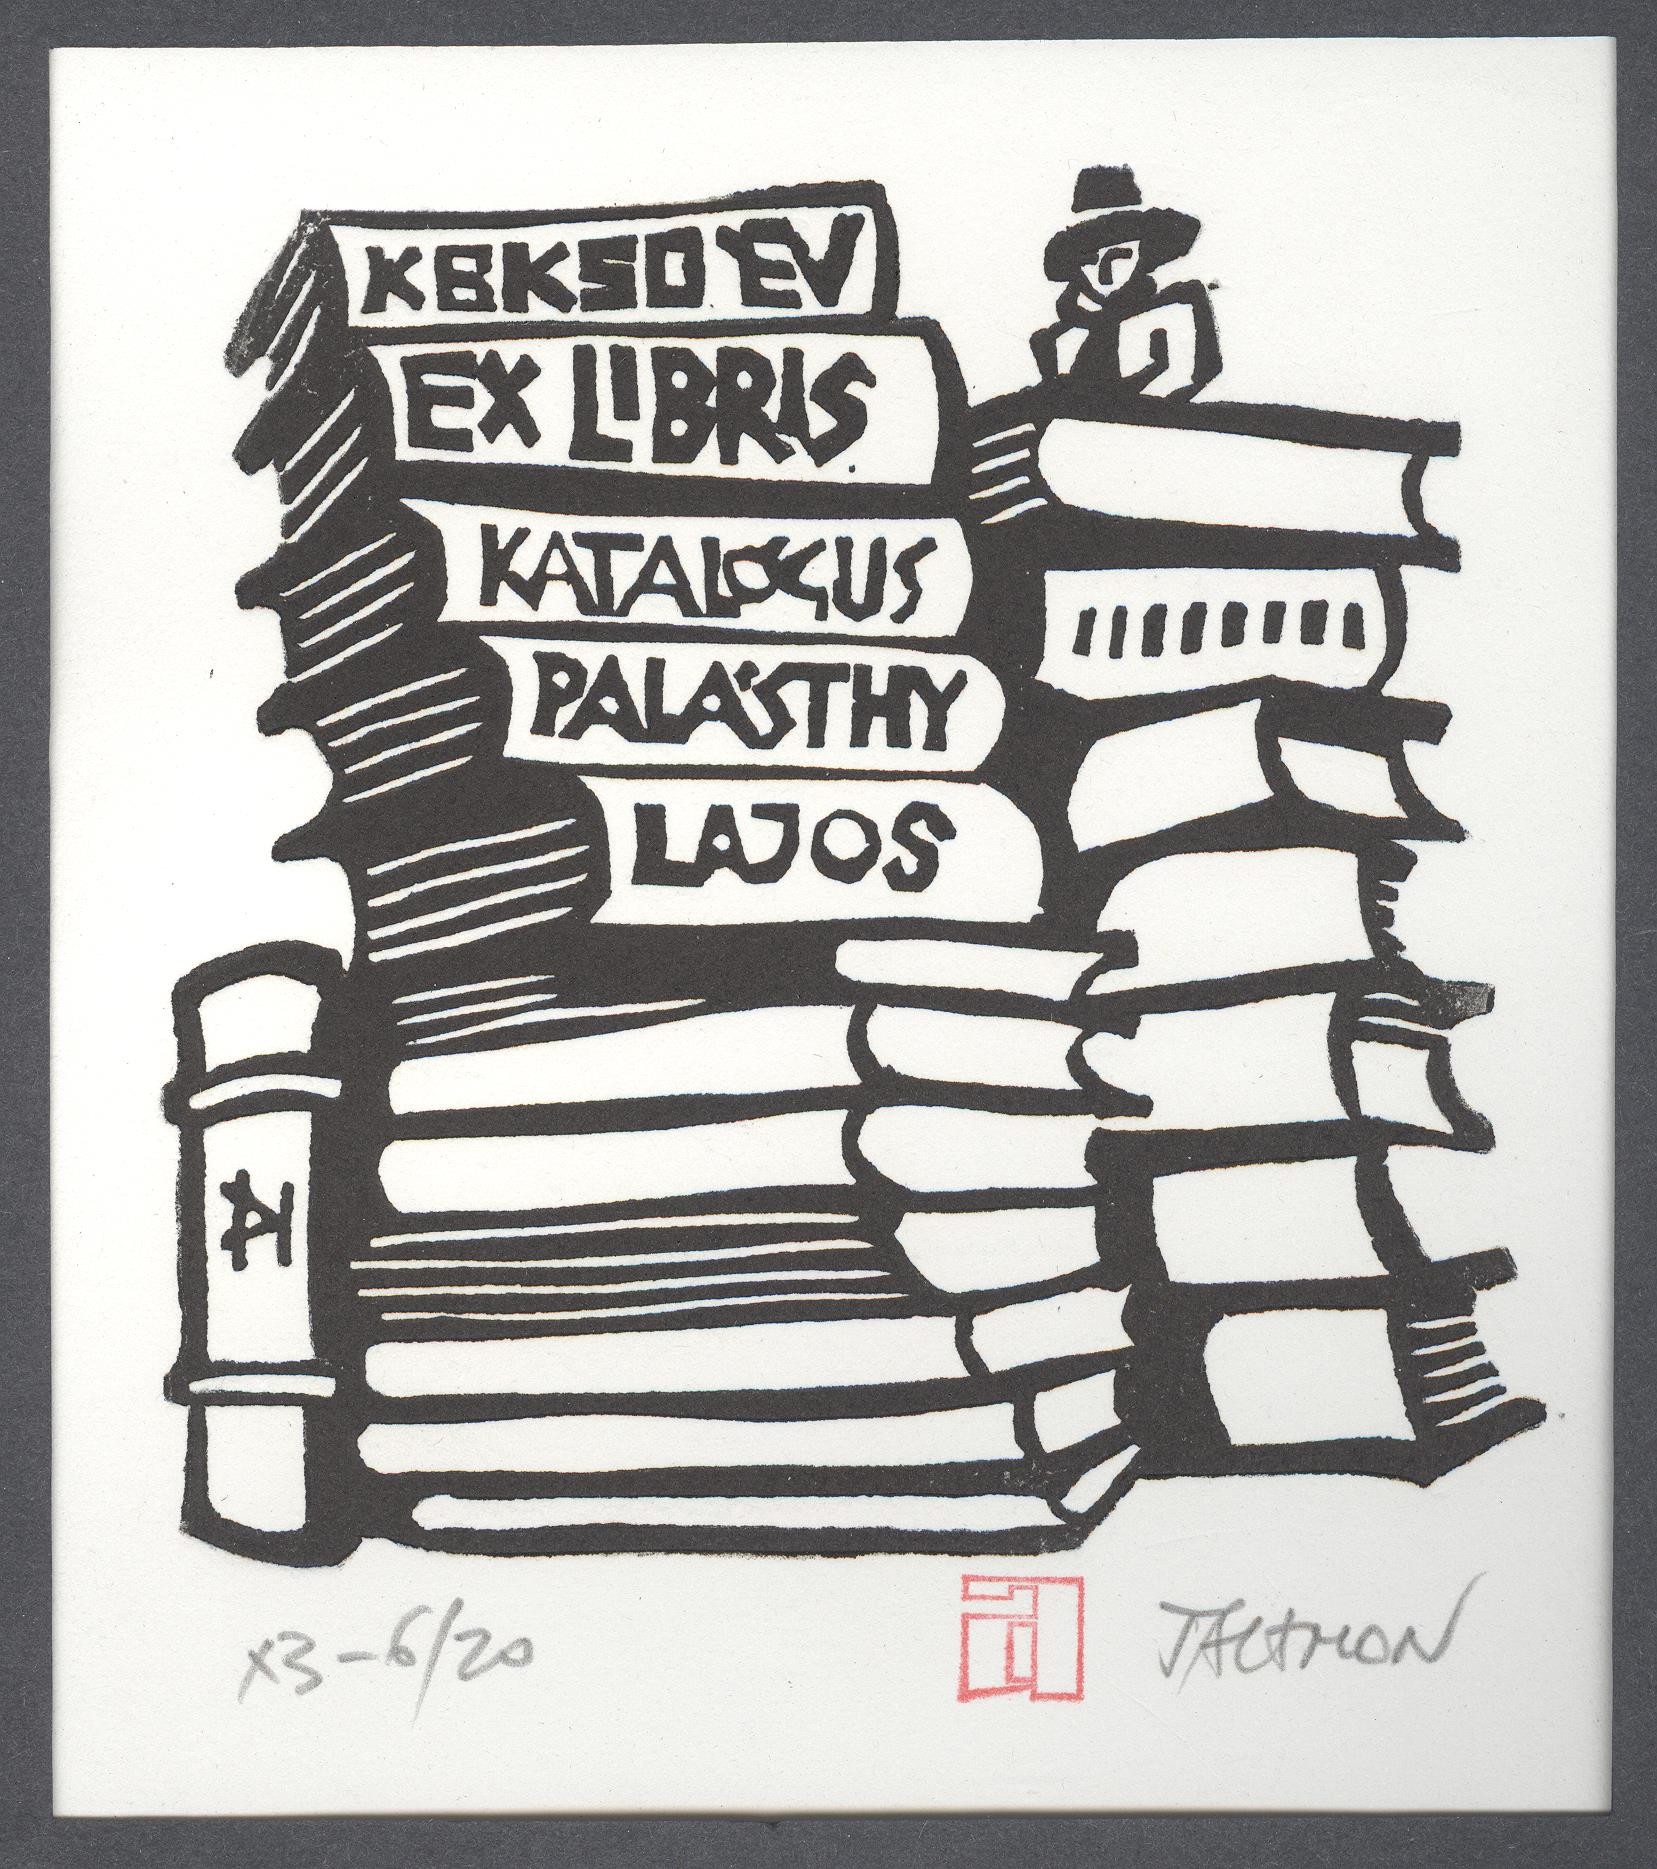 Ex-libris    K.B.K. 50 év      Katalógus Palásthy Lajos (Holló László Galéria, Putnok CC BY-NC-SA)